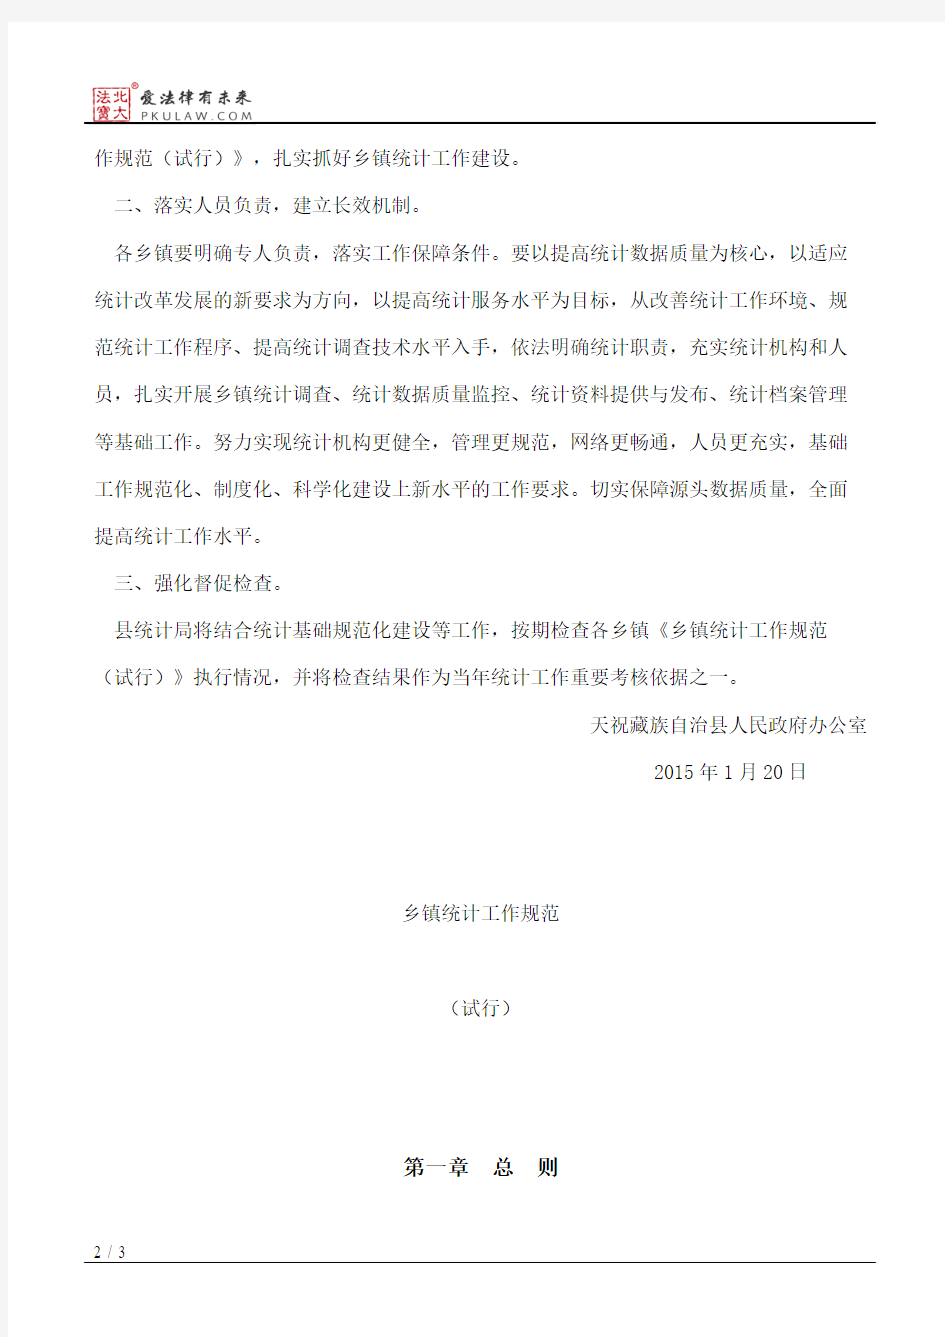 天祝藏族自治县人民政府办公室关于转发《乡镇统计工作规范(试行)